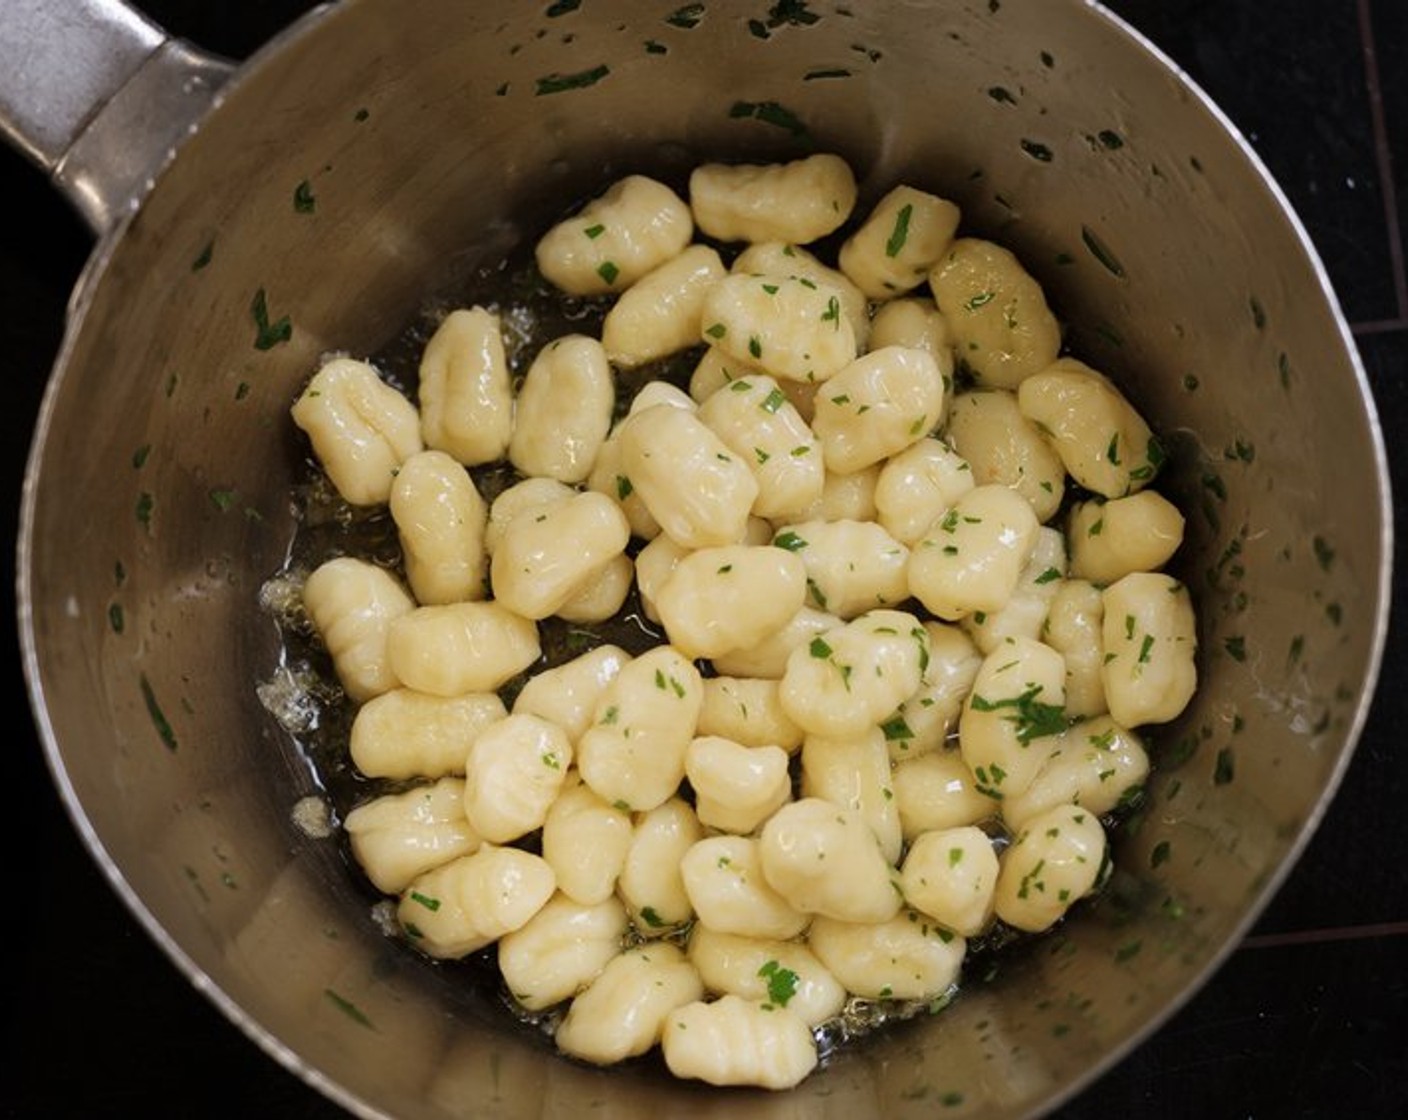 Schritt 2 Die Kartoffeln (500 g) 1 Stunde bei 150 °C im Ofen backen, leicht auskühlen lassen und schälen. Anschliessend passieren und mit den Eiern (4 Teelöffel) und Mehl (170 g) vermischen. Mit Salz (wenig), Pfeffer (wenig) und Muskat (wenig) abschmecken. Die Masse zu Stangen Formen und ca. 3 g schwere Gnocchi abstechen und über eine Gabel rollen. Kurz blanchieren und im kalten Wasser abschrecken. Mit Butter (4 Teelöffel) gleichmässig in einer Pfanne anbraten.